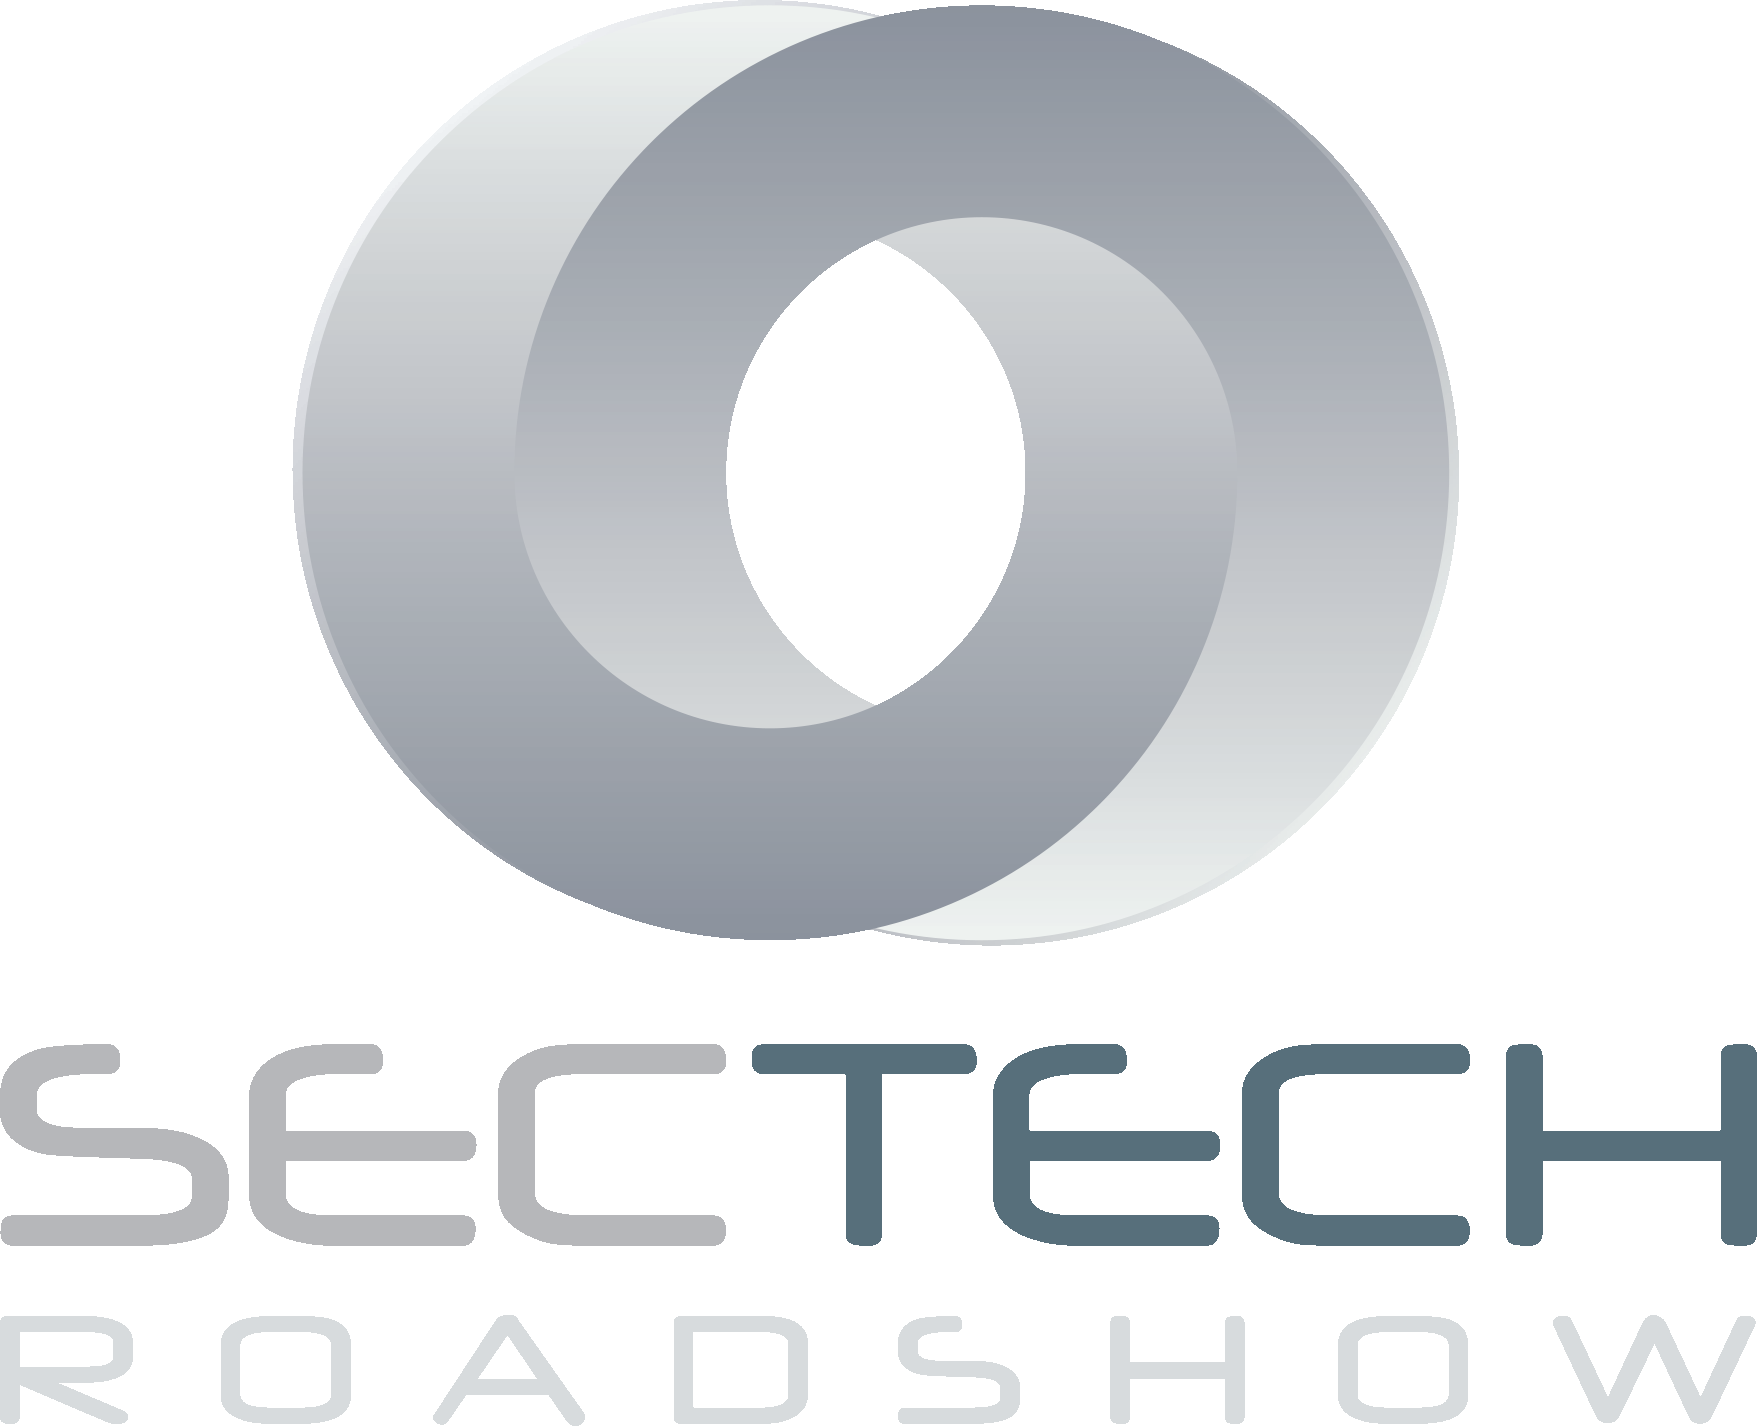 SecTech Roadshow Melbourne